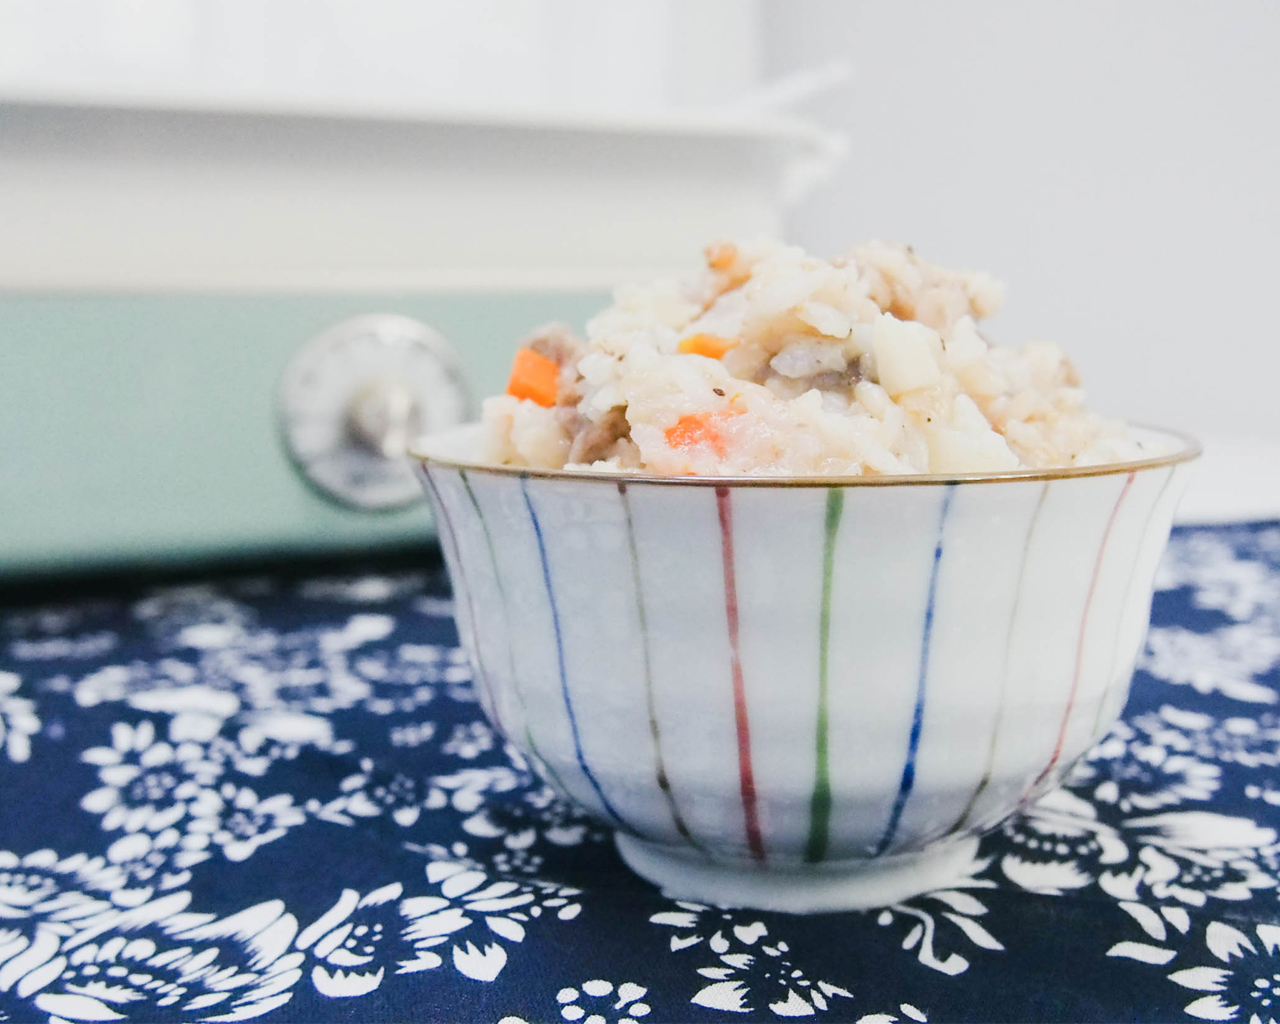 羊肉糙米焖饭的做法